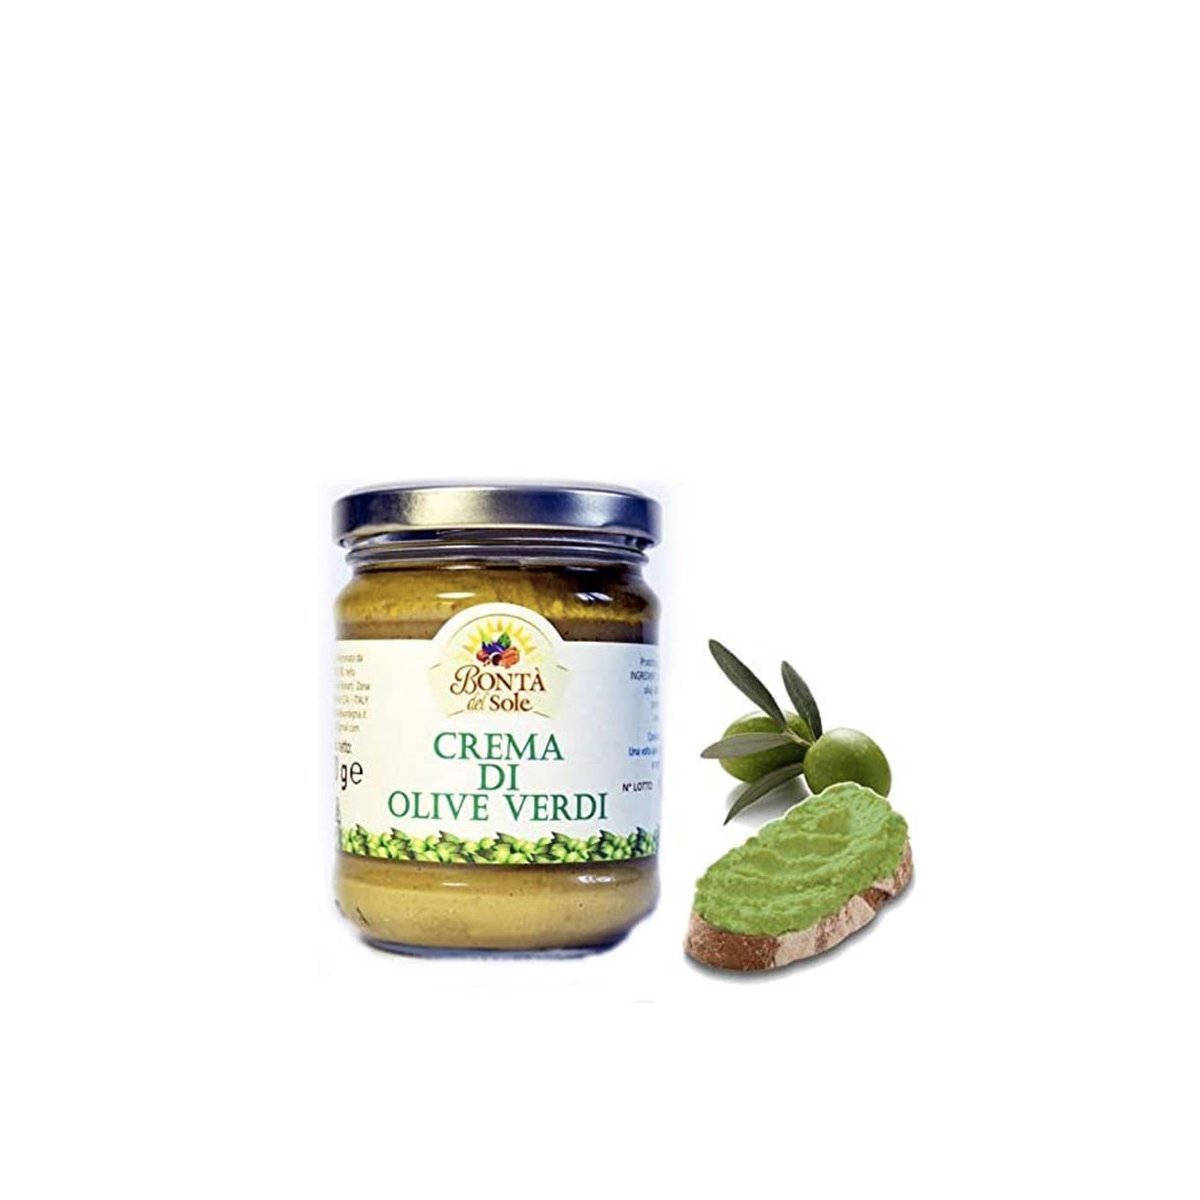 Crema di olive verdi 170gr Bontà del Sole Prodotto artigianale sardo